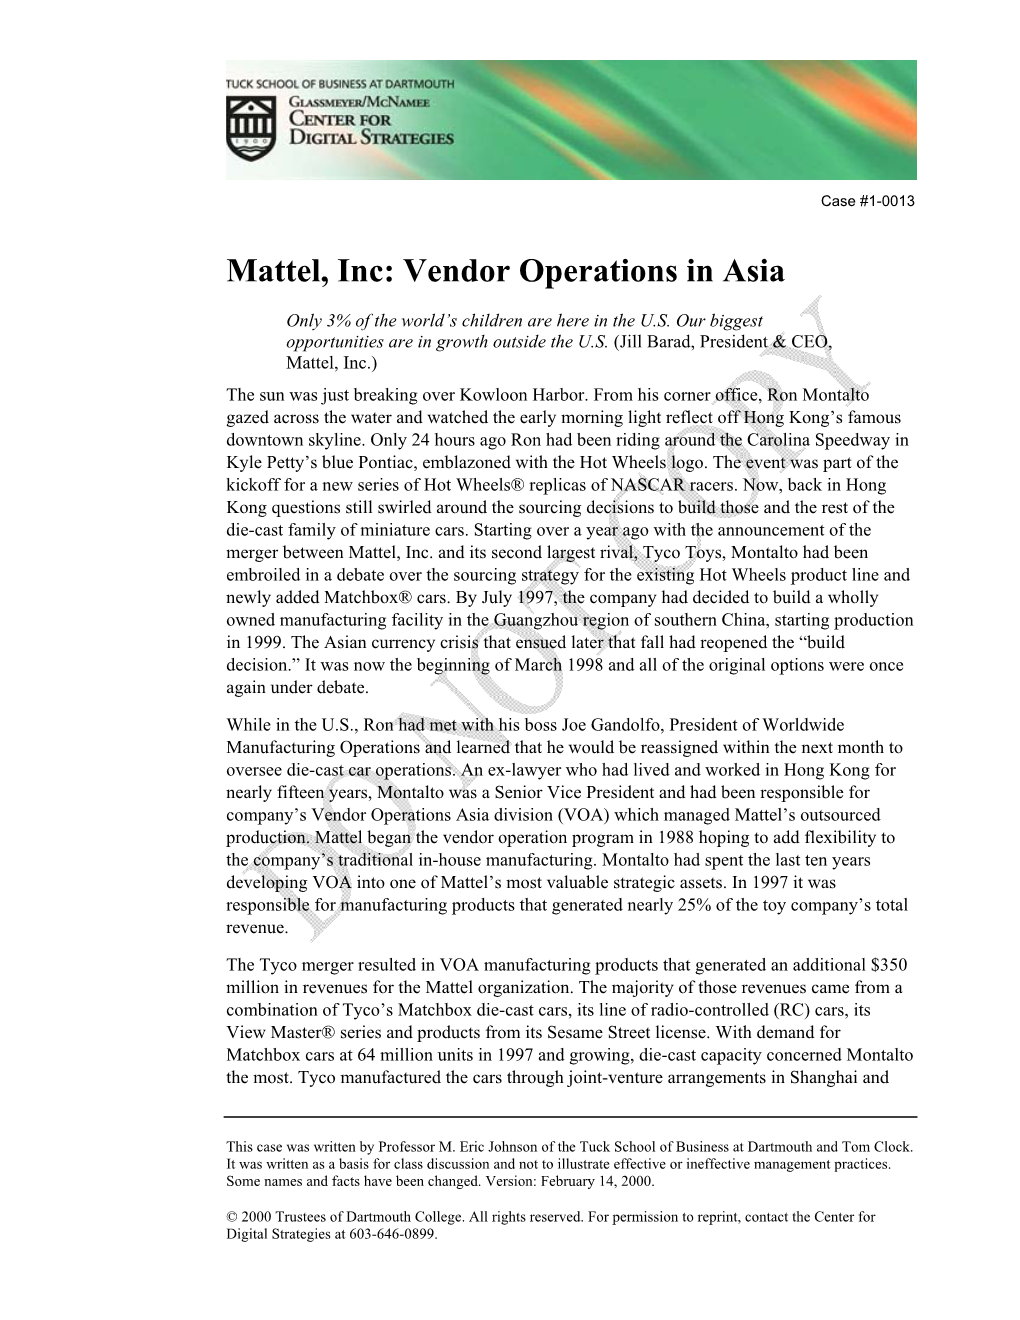 Mattel, Inc: Vendor Operations in Asia